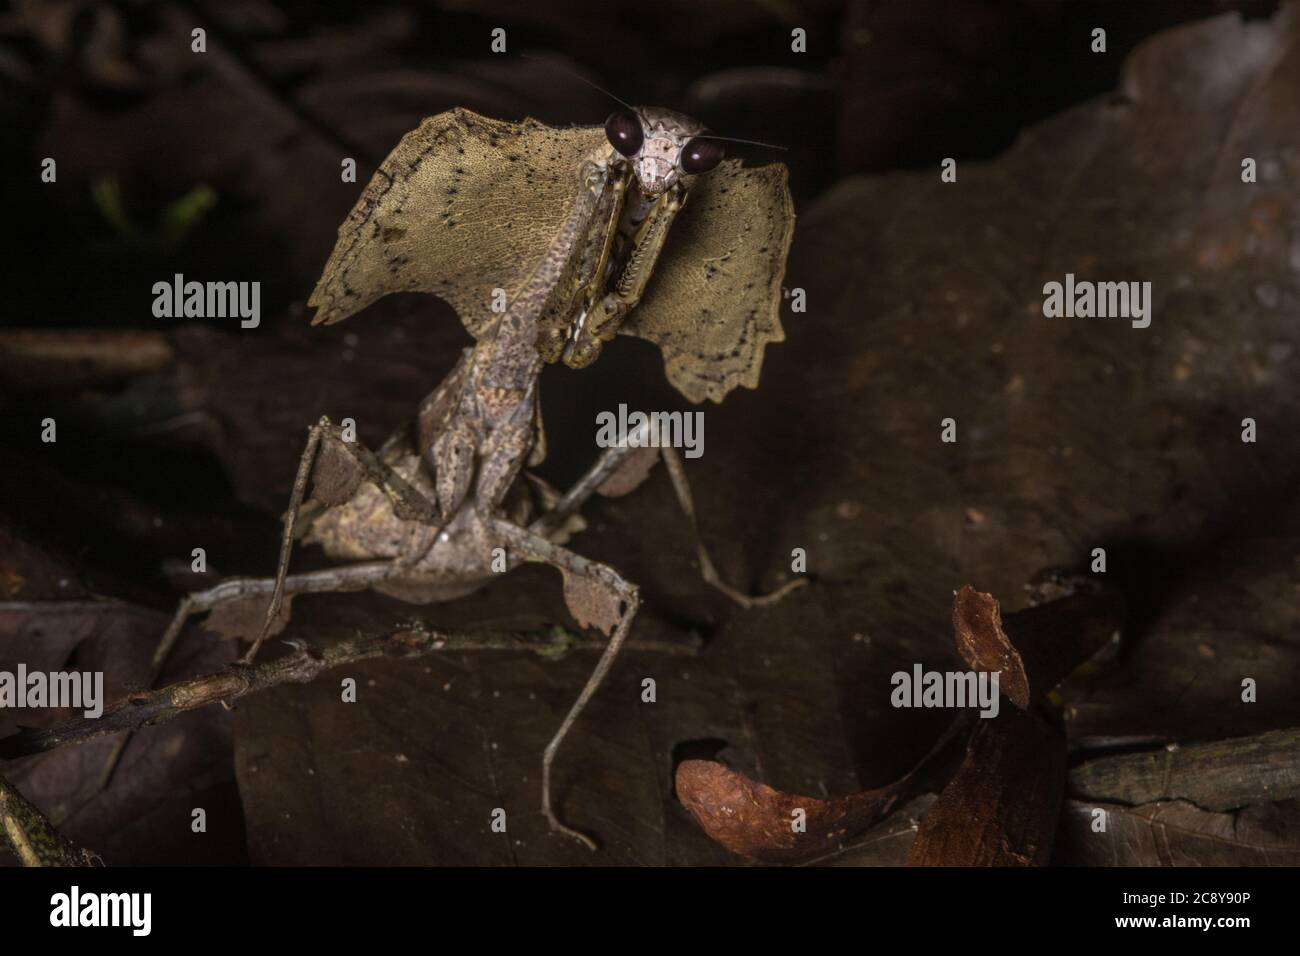 La mantis gigante della foglia morta (Deroplatys essiccata) uno dei mantidi più impressionanti del mondo, questa specie si trova in Borneo. Foto Stock